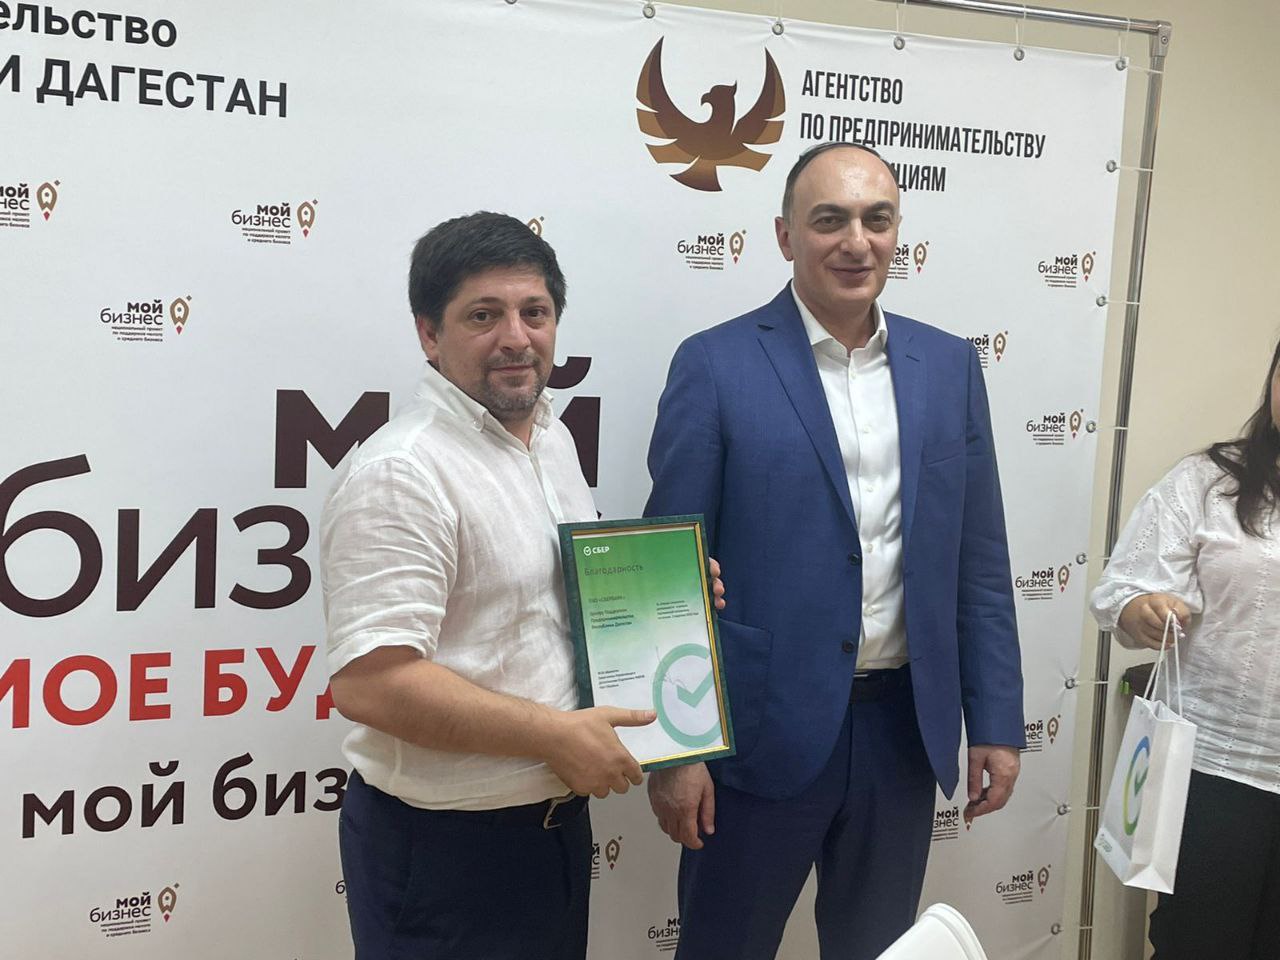 Центр поддержки предпринимательства Республики Дагестан стал лучшим в рамках партнёрской программы за 2 квартал 2022 года.